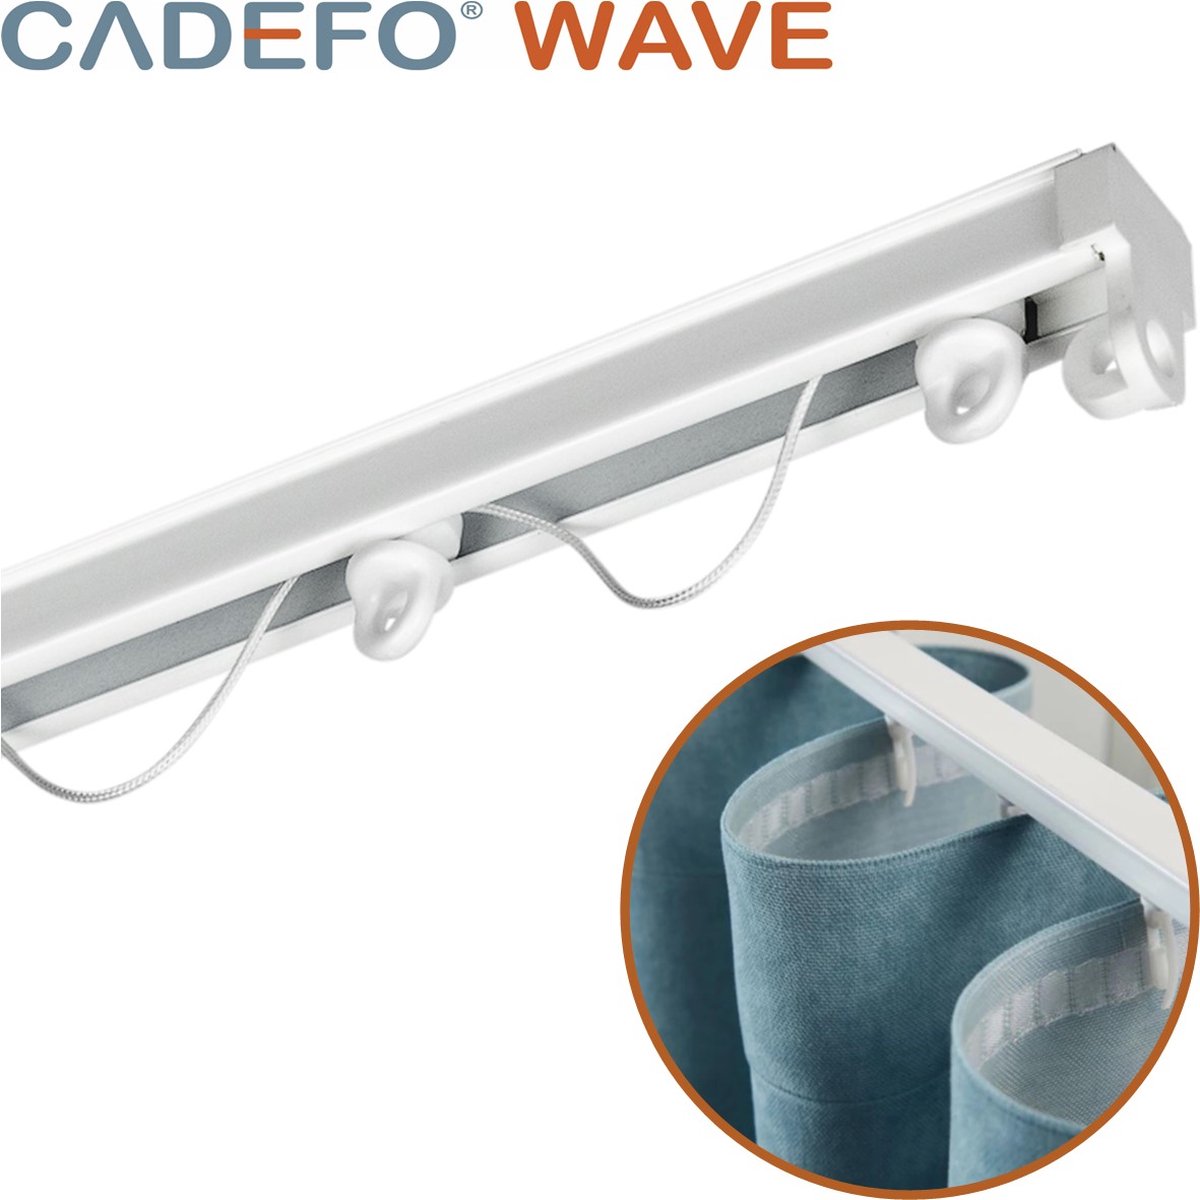 CADEFO WAVE (451 - 500 cm) Gordijnrails - Compleet op maat! - UIT 1 STUK - Leverbaar tot 6 meter - Plafondbevestiging - Lengte 482 cm